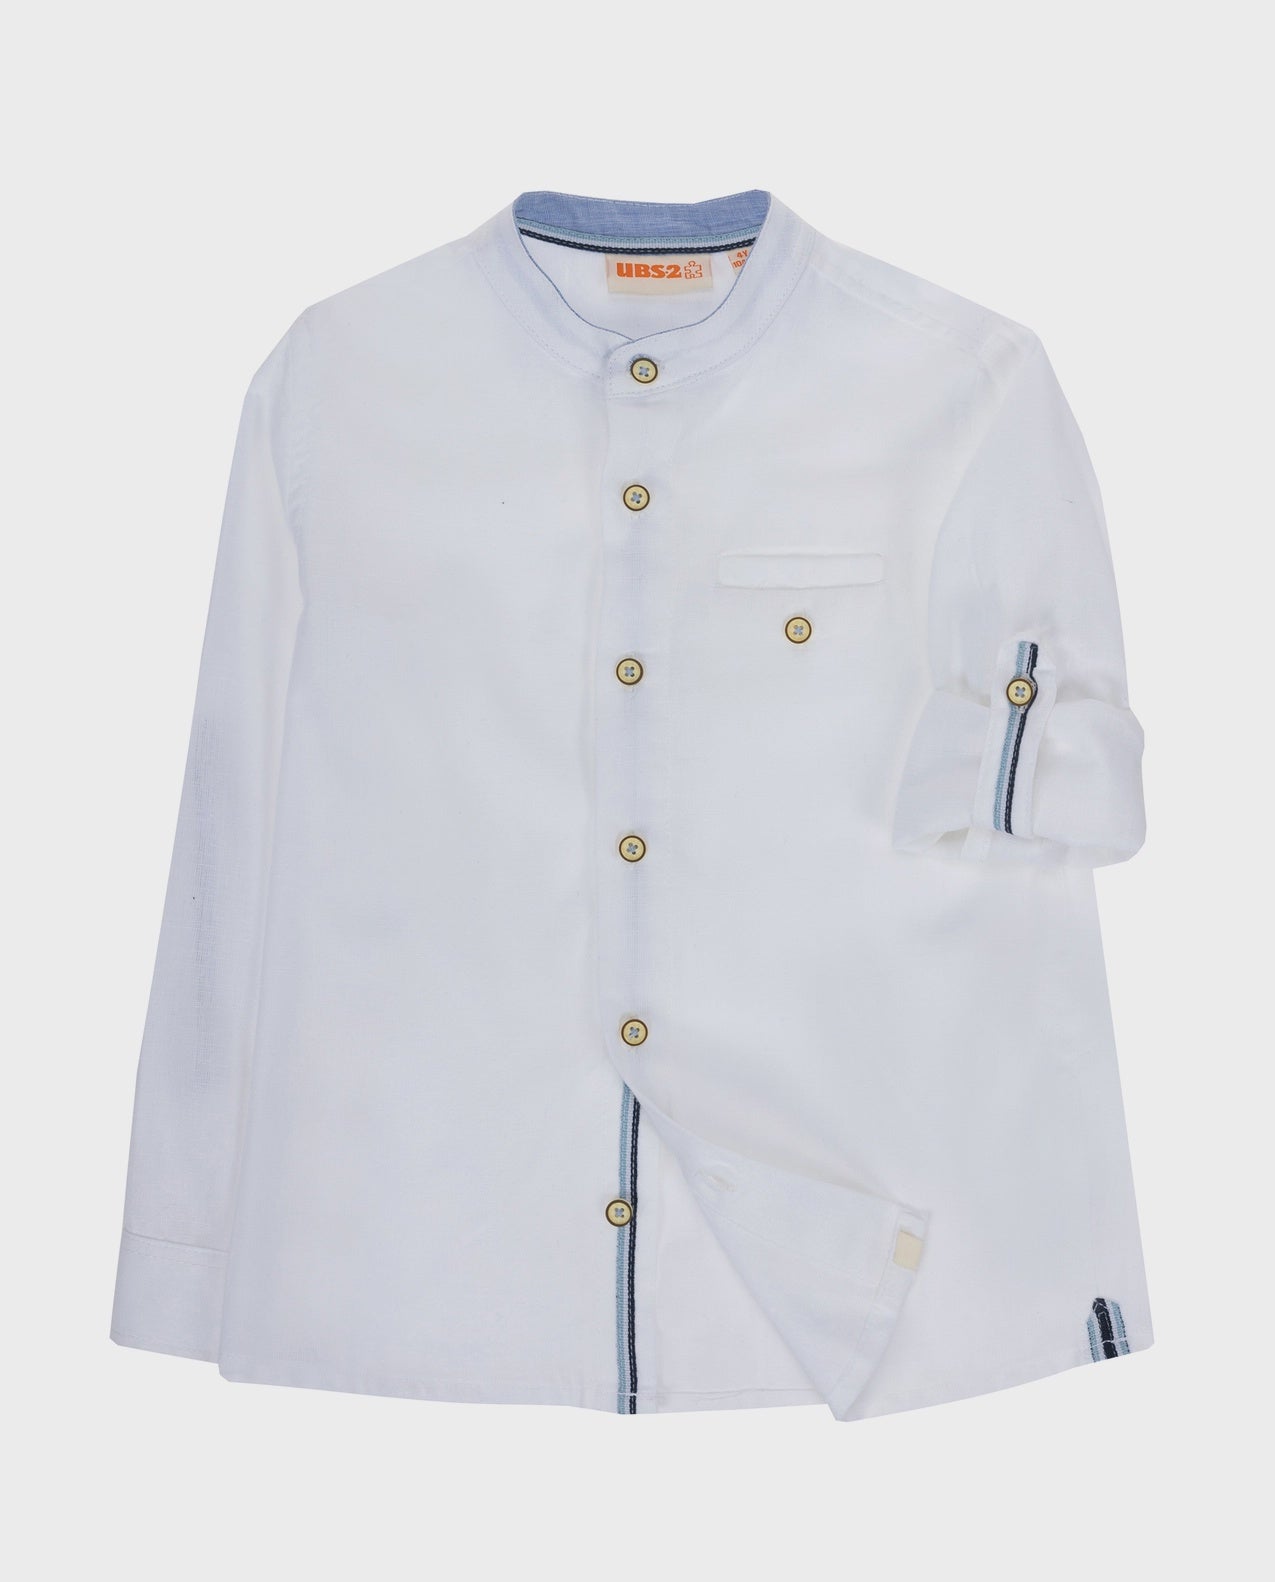 Boy's White Shirt in Linen/Cotton